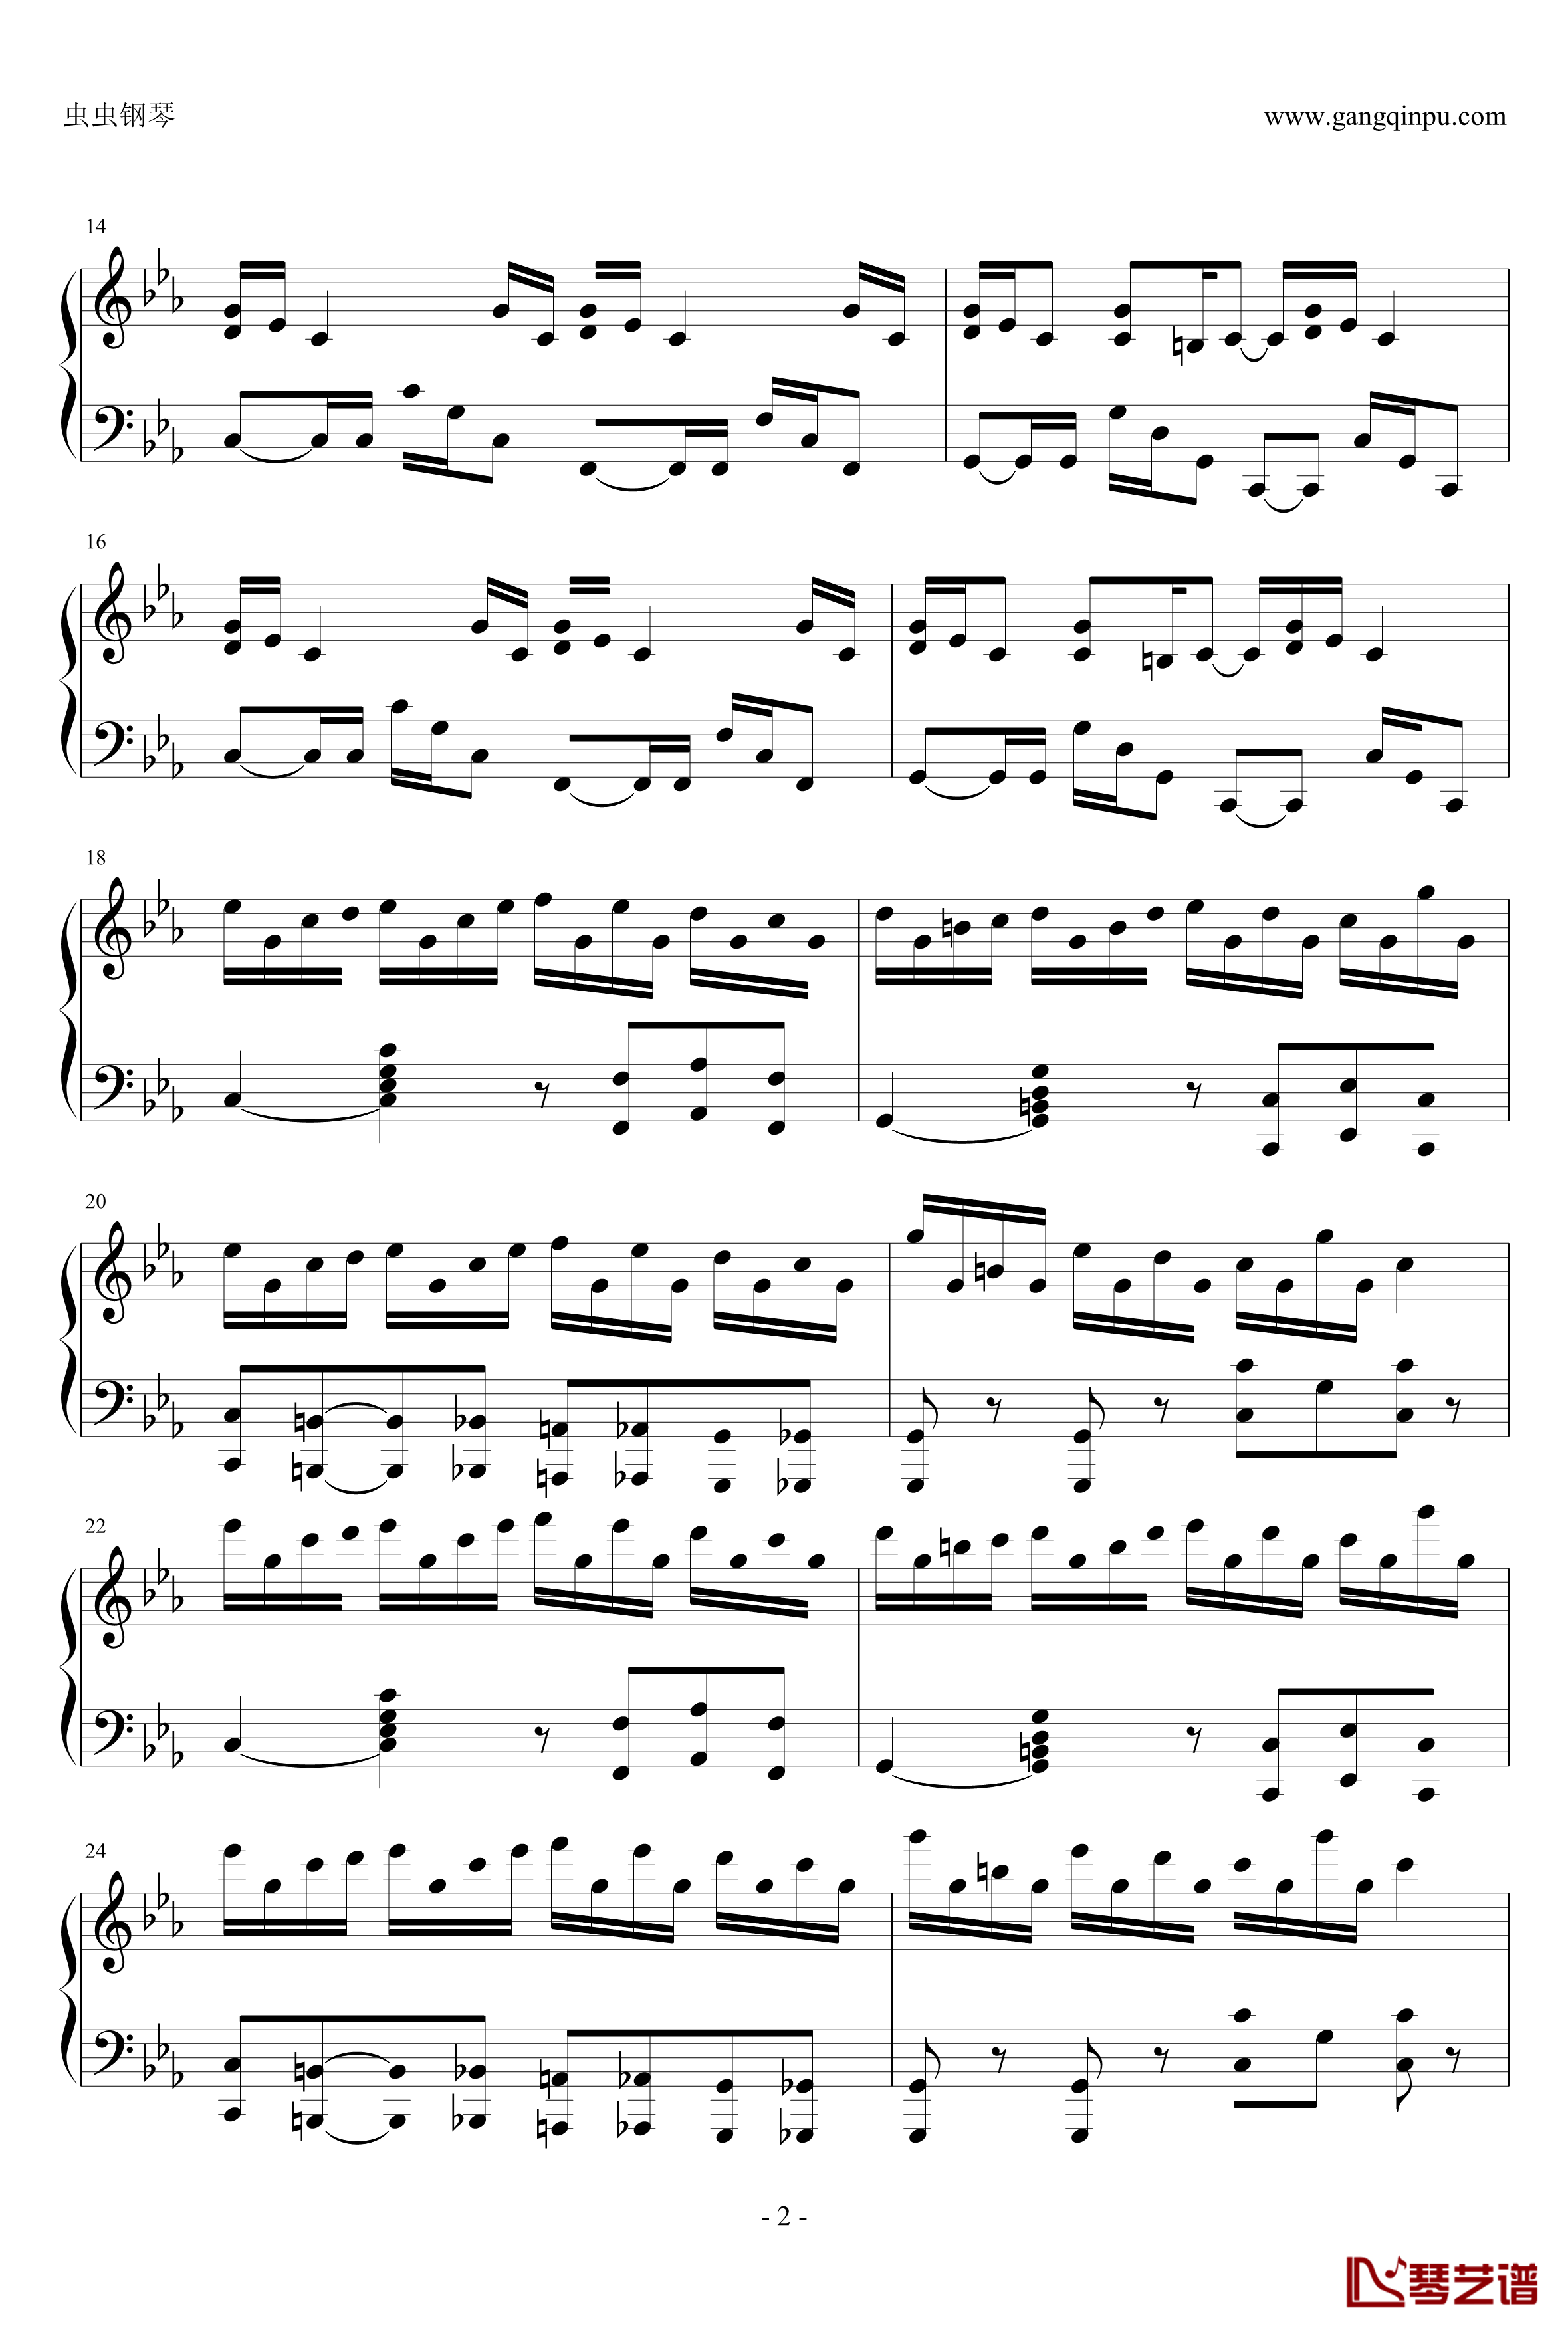 克罗地亚狂想曲钢琴谱-这个才是原版-马克西姆-Maksim·Mrvica2